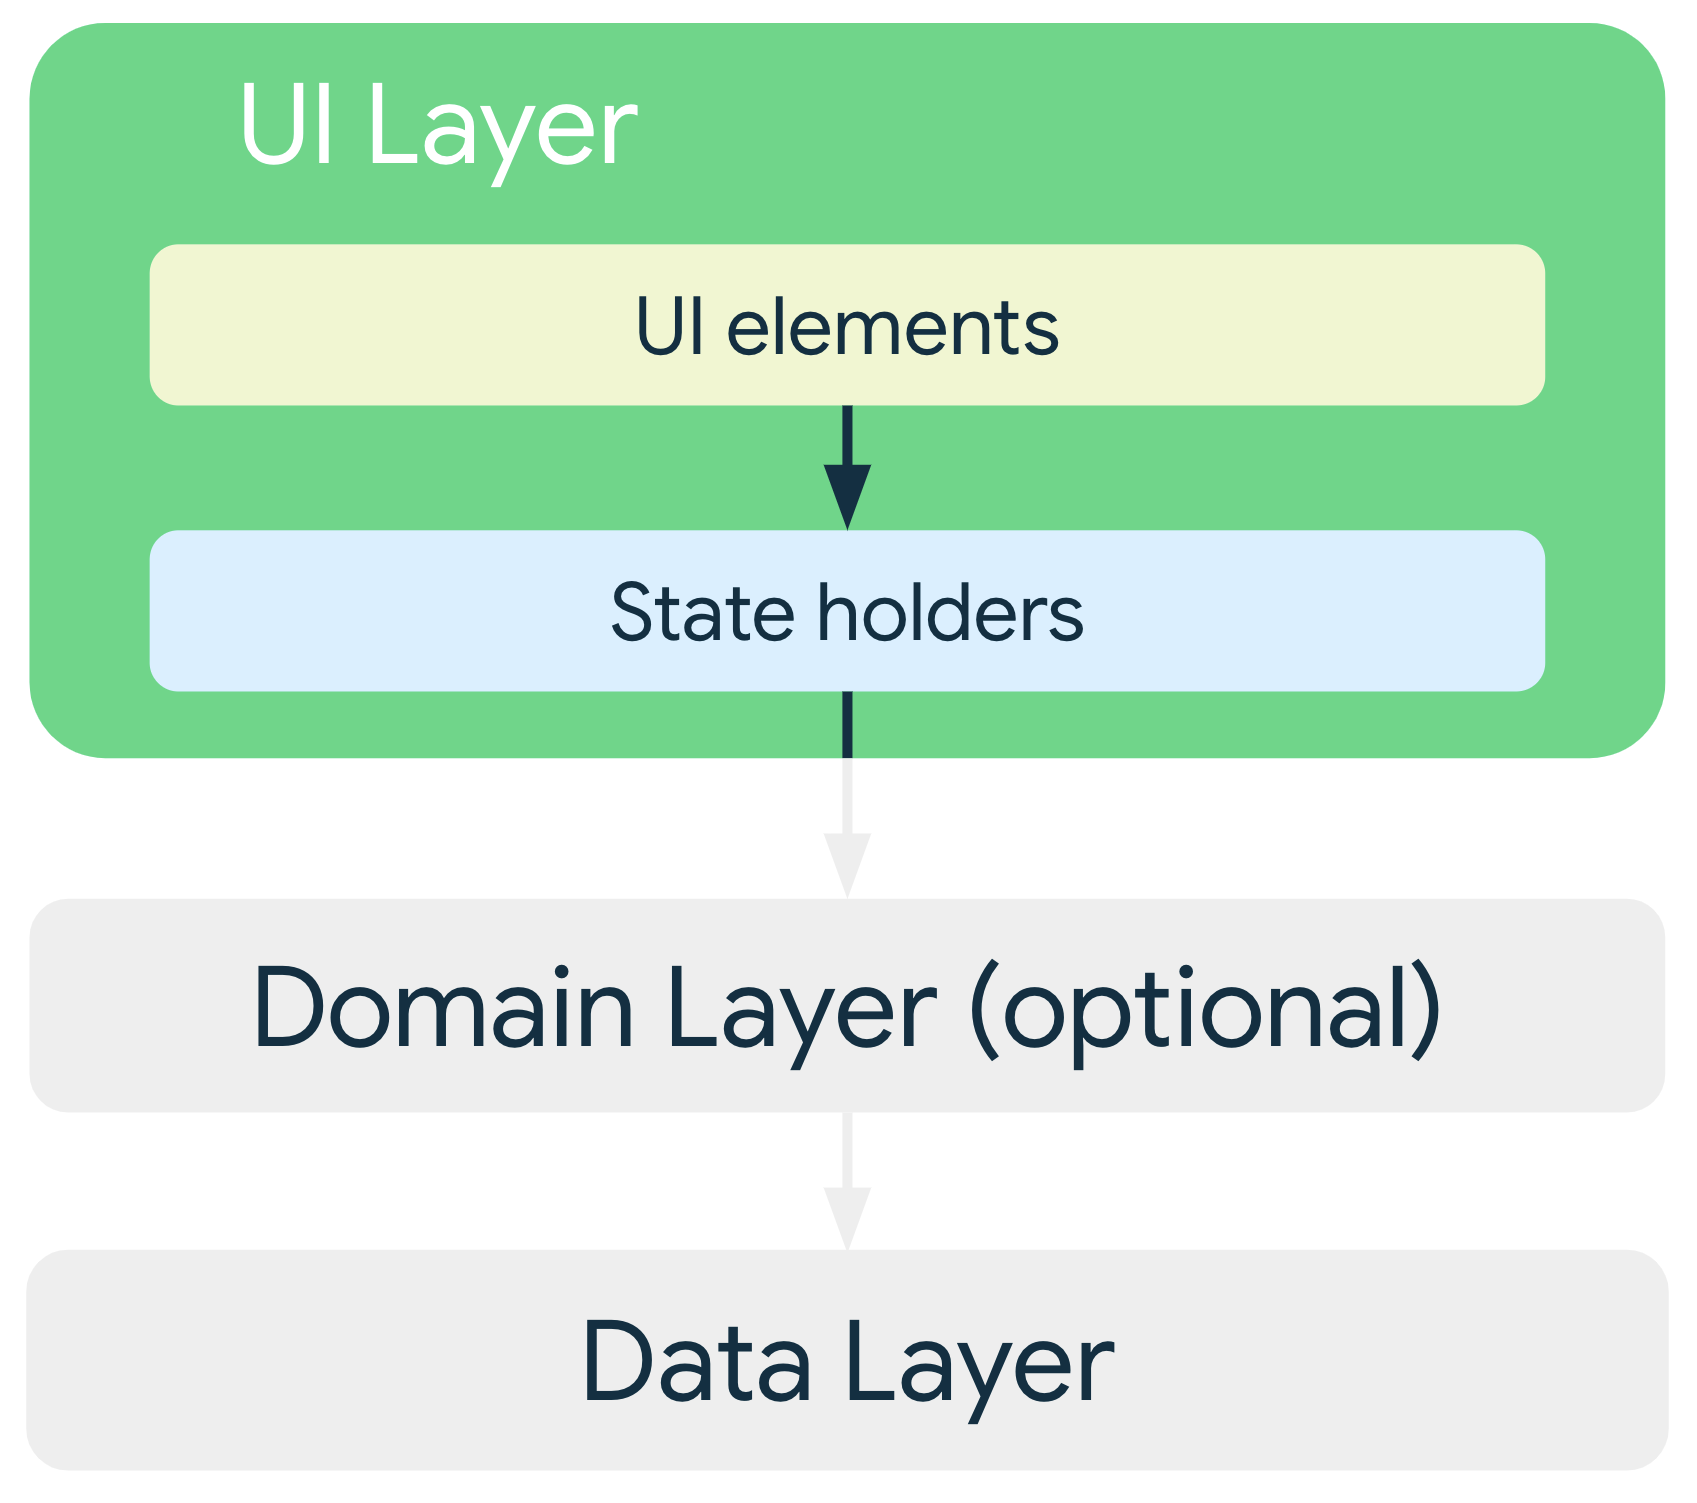 一般的なアーキテクチャでは、UI レイヤの UI 要素は状態ホルダーに依存し、状態ホルダーはデータレイヤまたはオプションのドメインレイヤのいずれかのクラスに依存します。